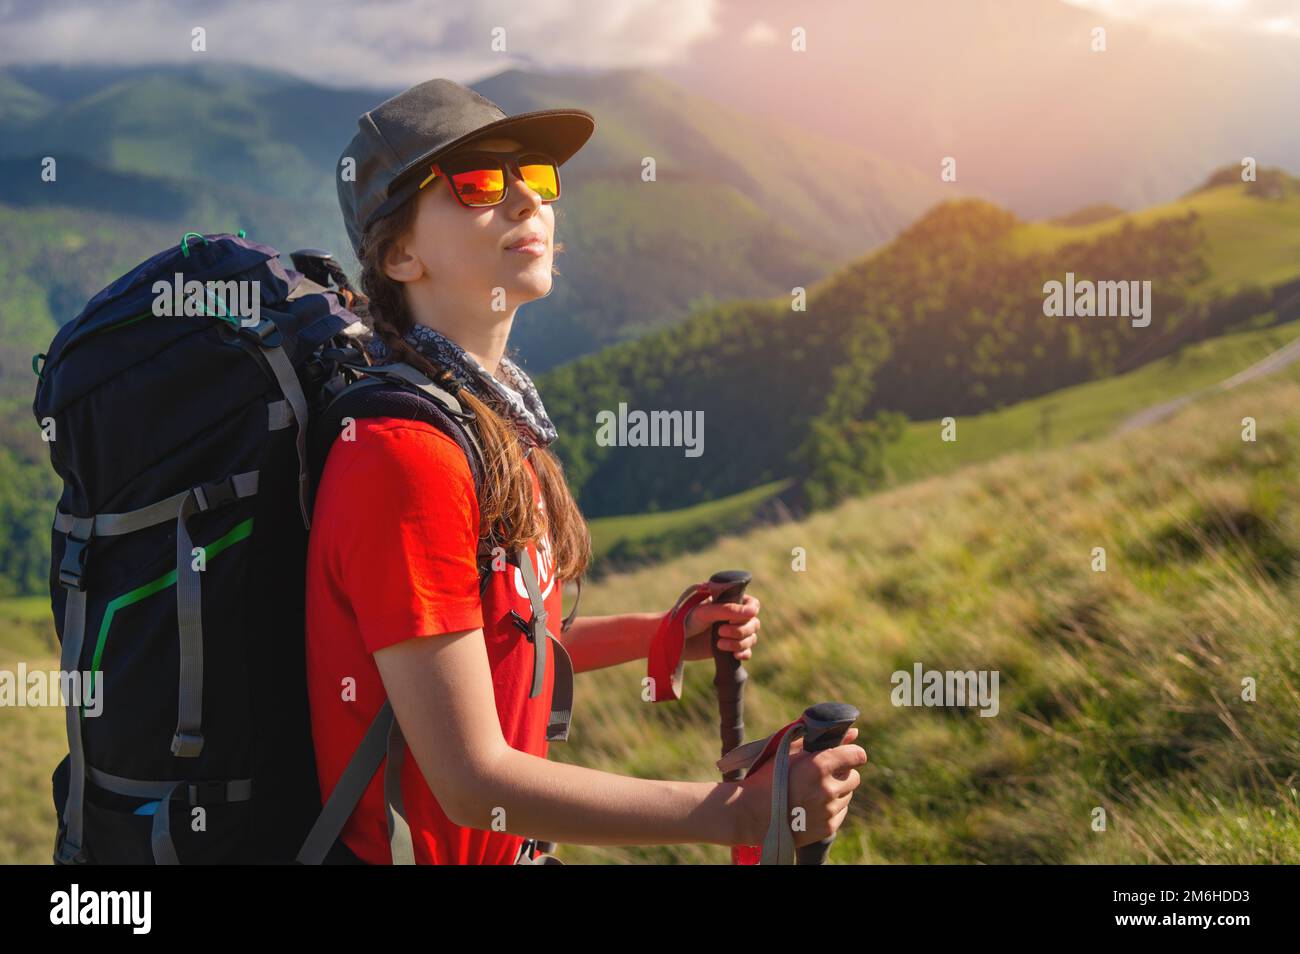 Ein touristisches Mädchen mit Rucksack bewundert den Sonnenuntergang vom Berg aus Stockfoto